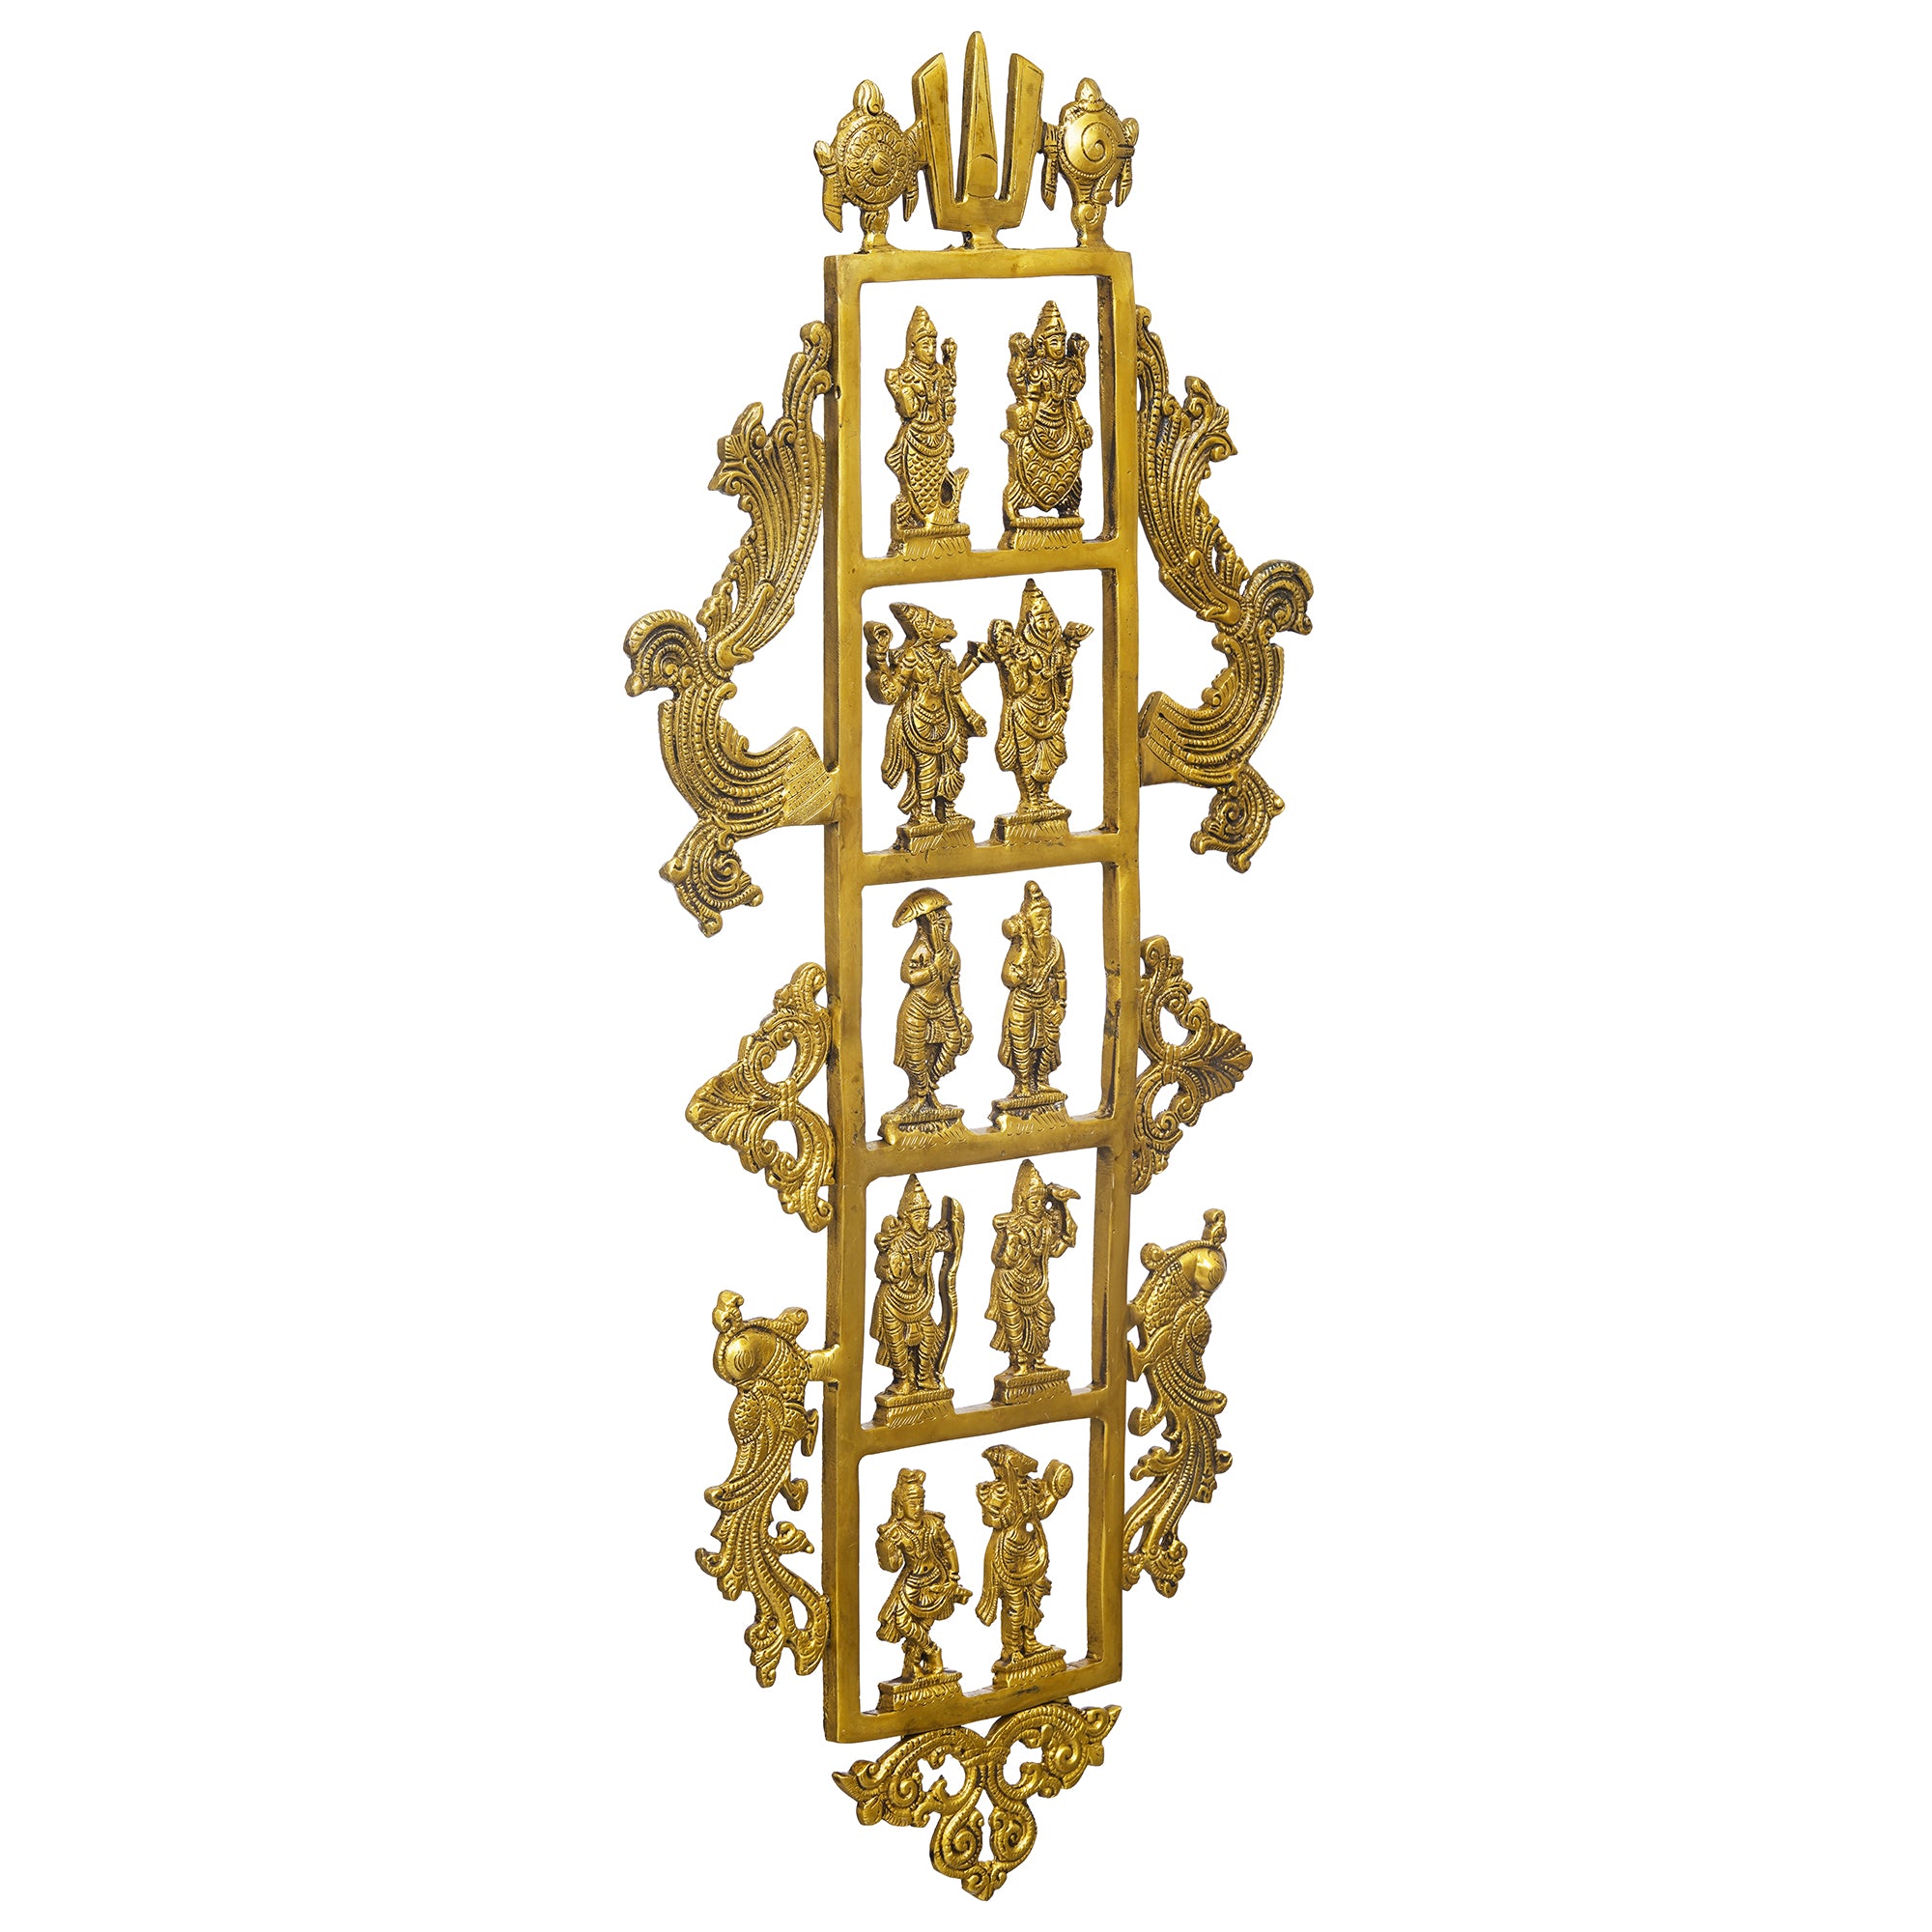 eCraftIndia Golden Brass Lord Vishnu Dashavatara - Ten Incarnations of Vishnu Religious Wall Hanging 6